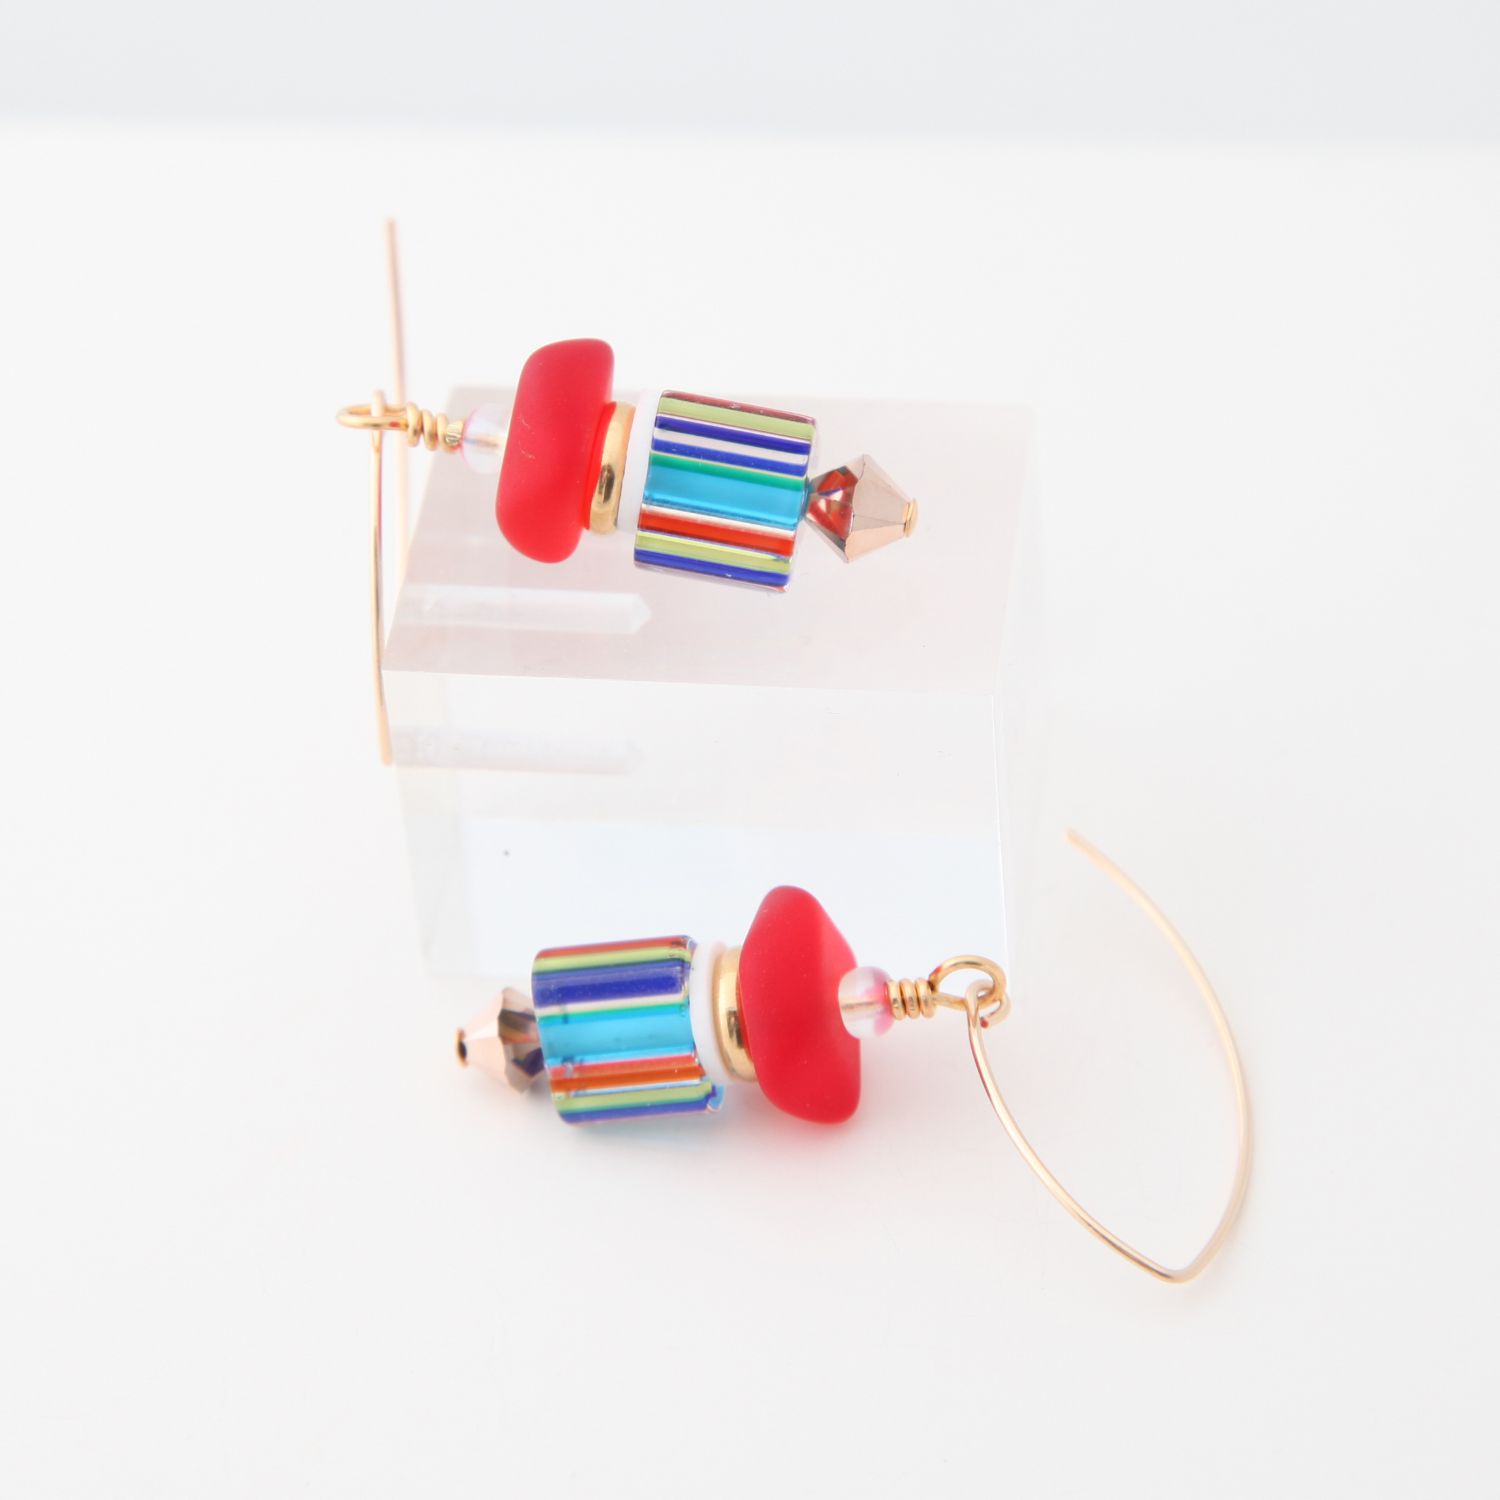 Farheen Ali: Moon Flask Earrings – Stripes Product Image 3 of 3